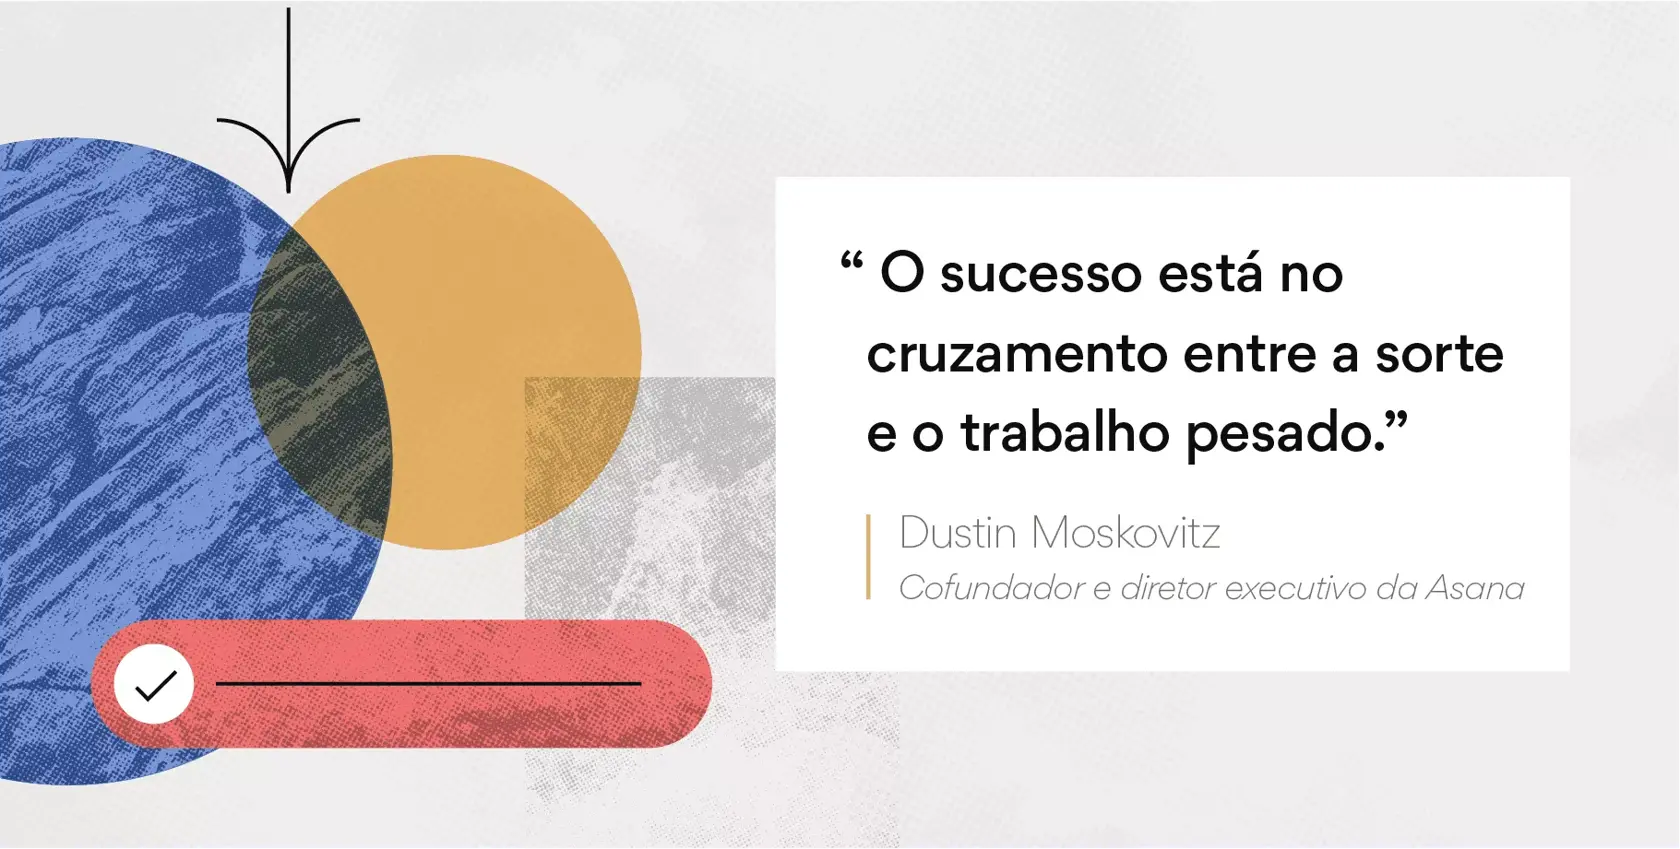 [Ilustração embutida] Imagem da citação de Dustin Moskovitz para motivação de equipes (abstrata)